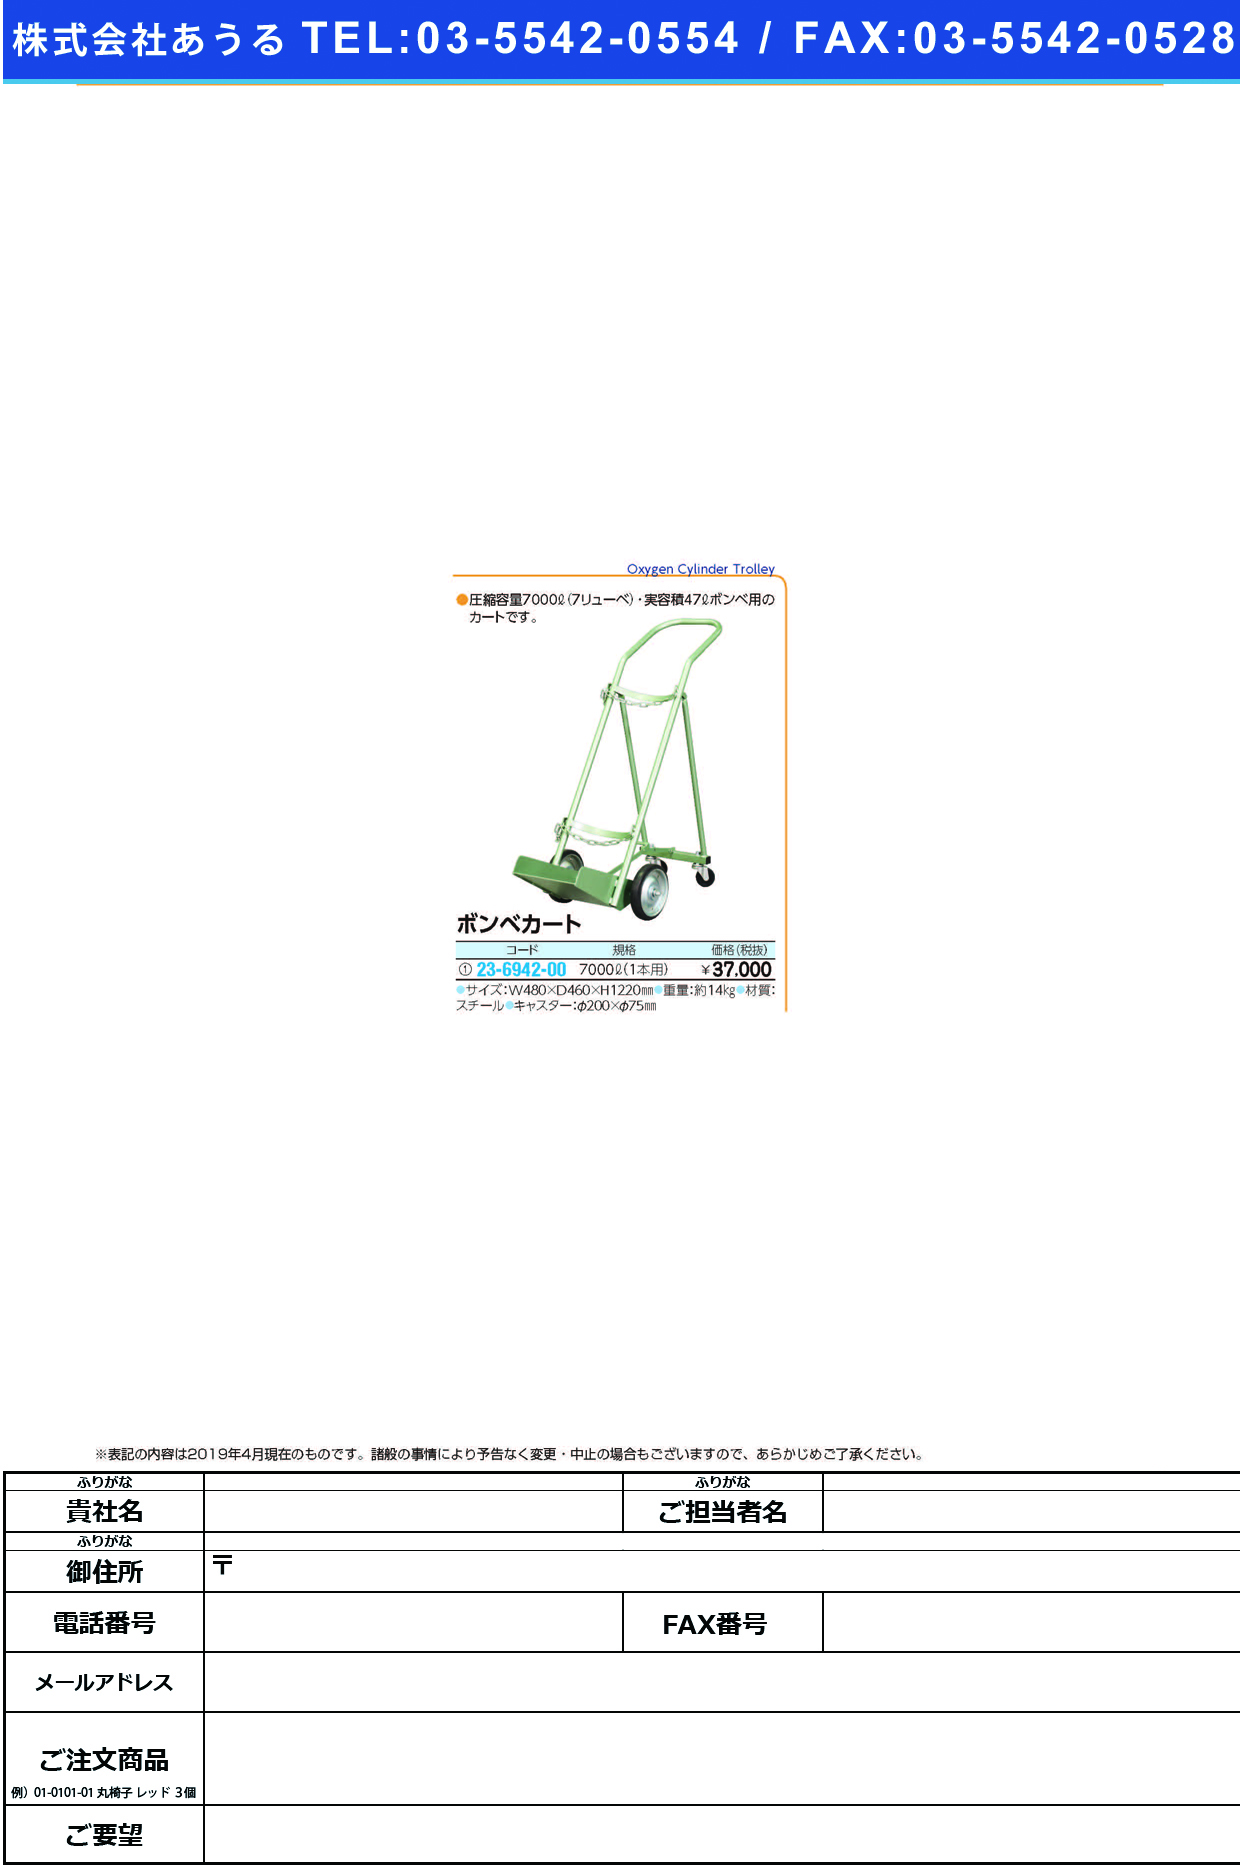 (23-6942-00)ボンベカート（７０００Ｌ・１本用） KBC70-1 ﾎﾞﾝﾍﾞｶｰﾄ(7000L1ﾎﾝﾖｳ)【1台単位】【2019年カタログ商品】